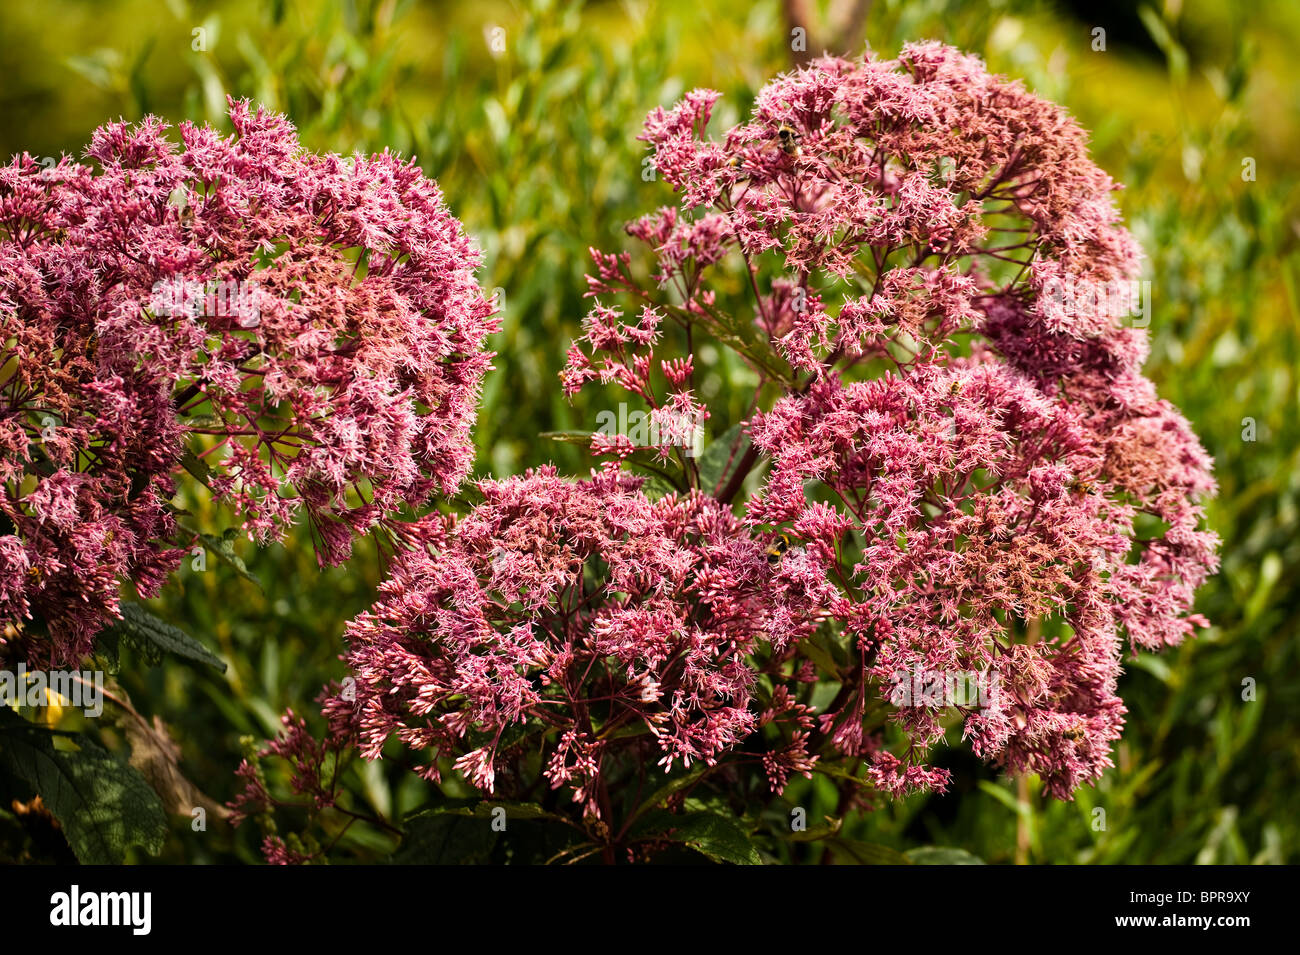 Eupatorium purpureum subsp maculatum 'Atropurpureum', Joe Pye Weed, in flower in August Stock Photo